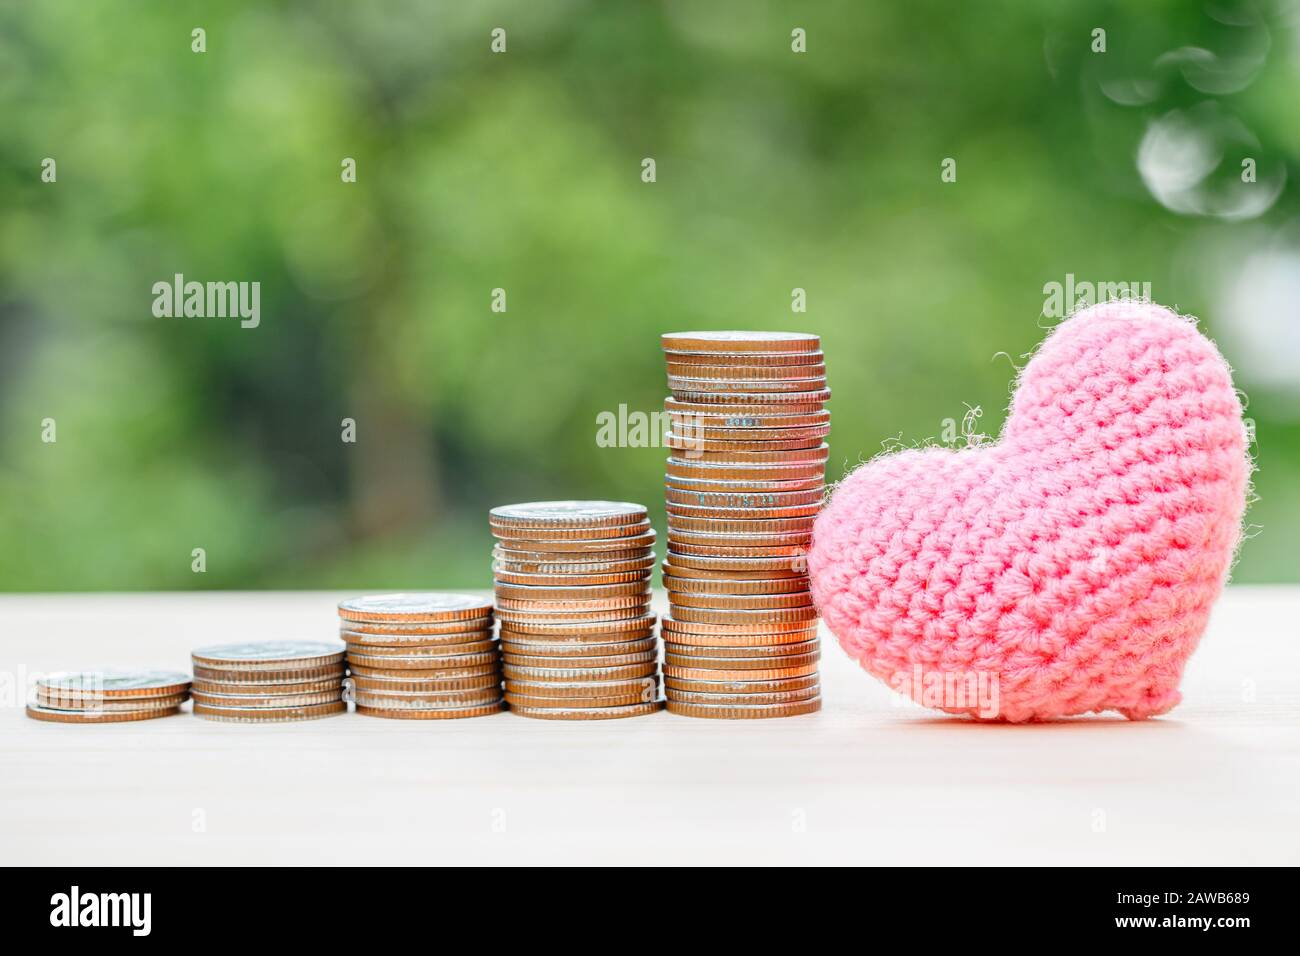 Wunderschönes Herz mit Geldmünzenstapel für die Liebe zum Sparen oder halten von Geschäftsgewinn oder medizinischem Schutzkonzept. Stockfoto